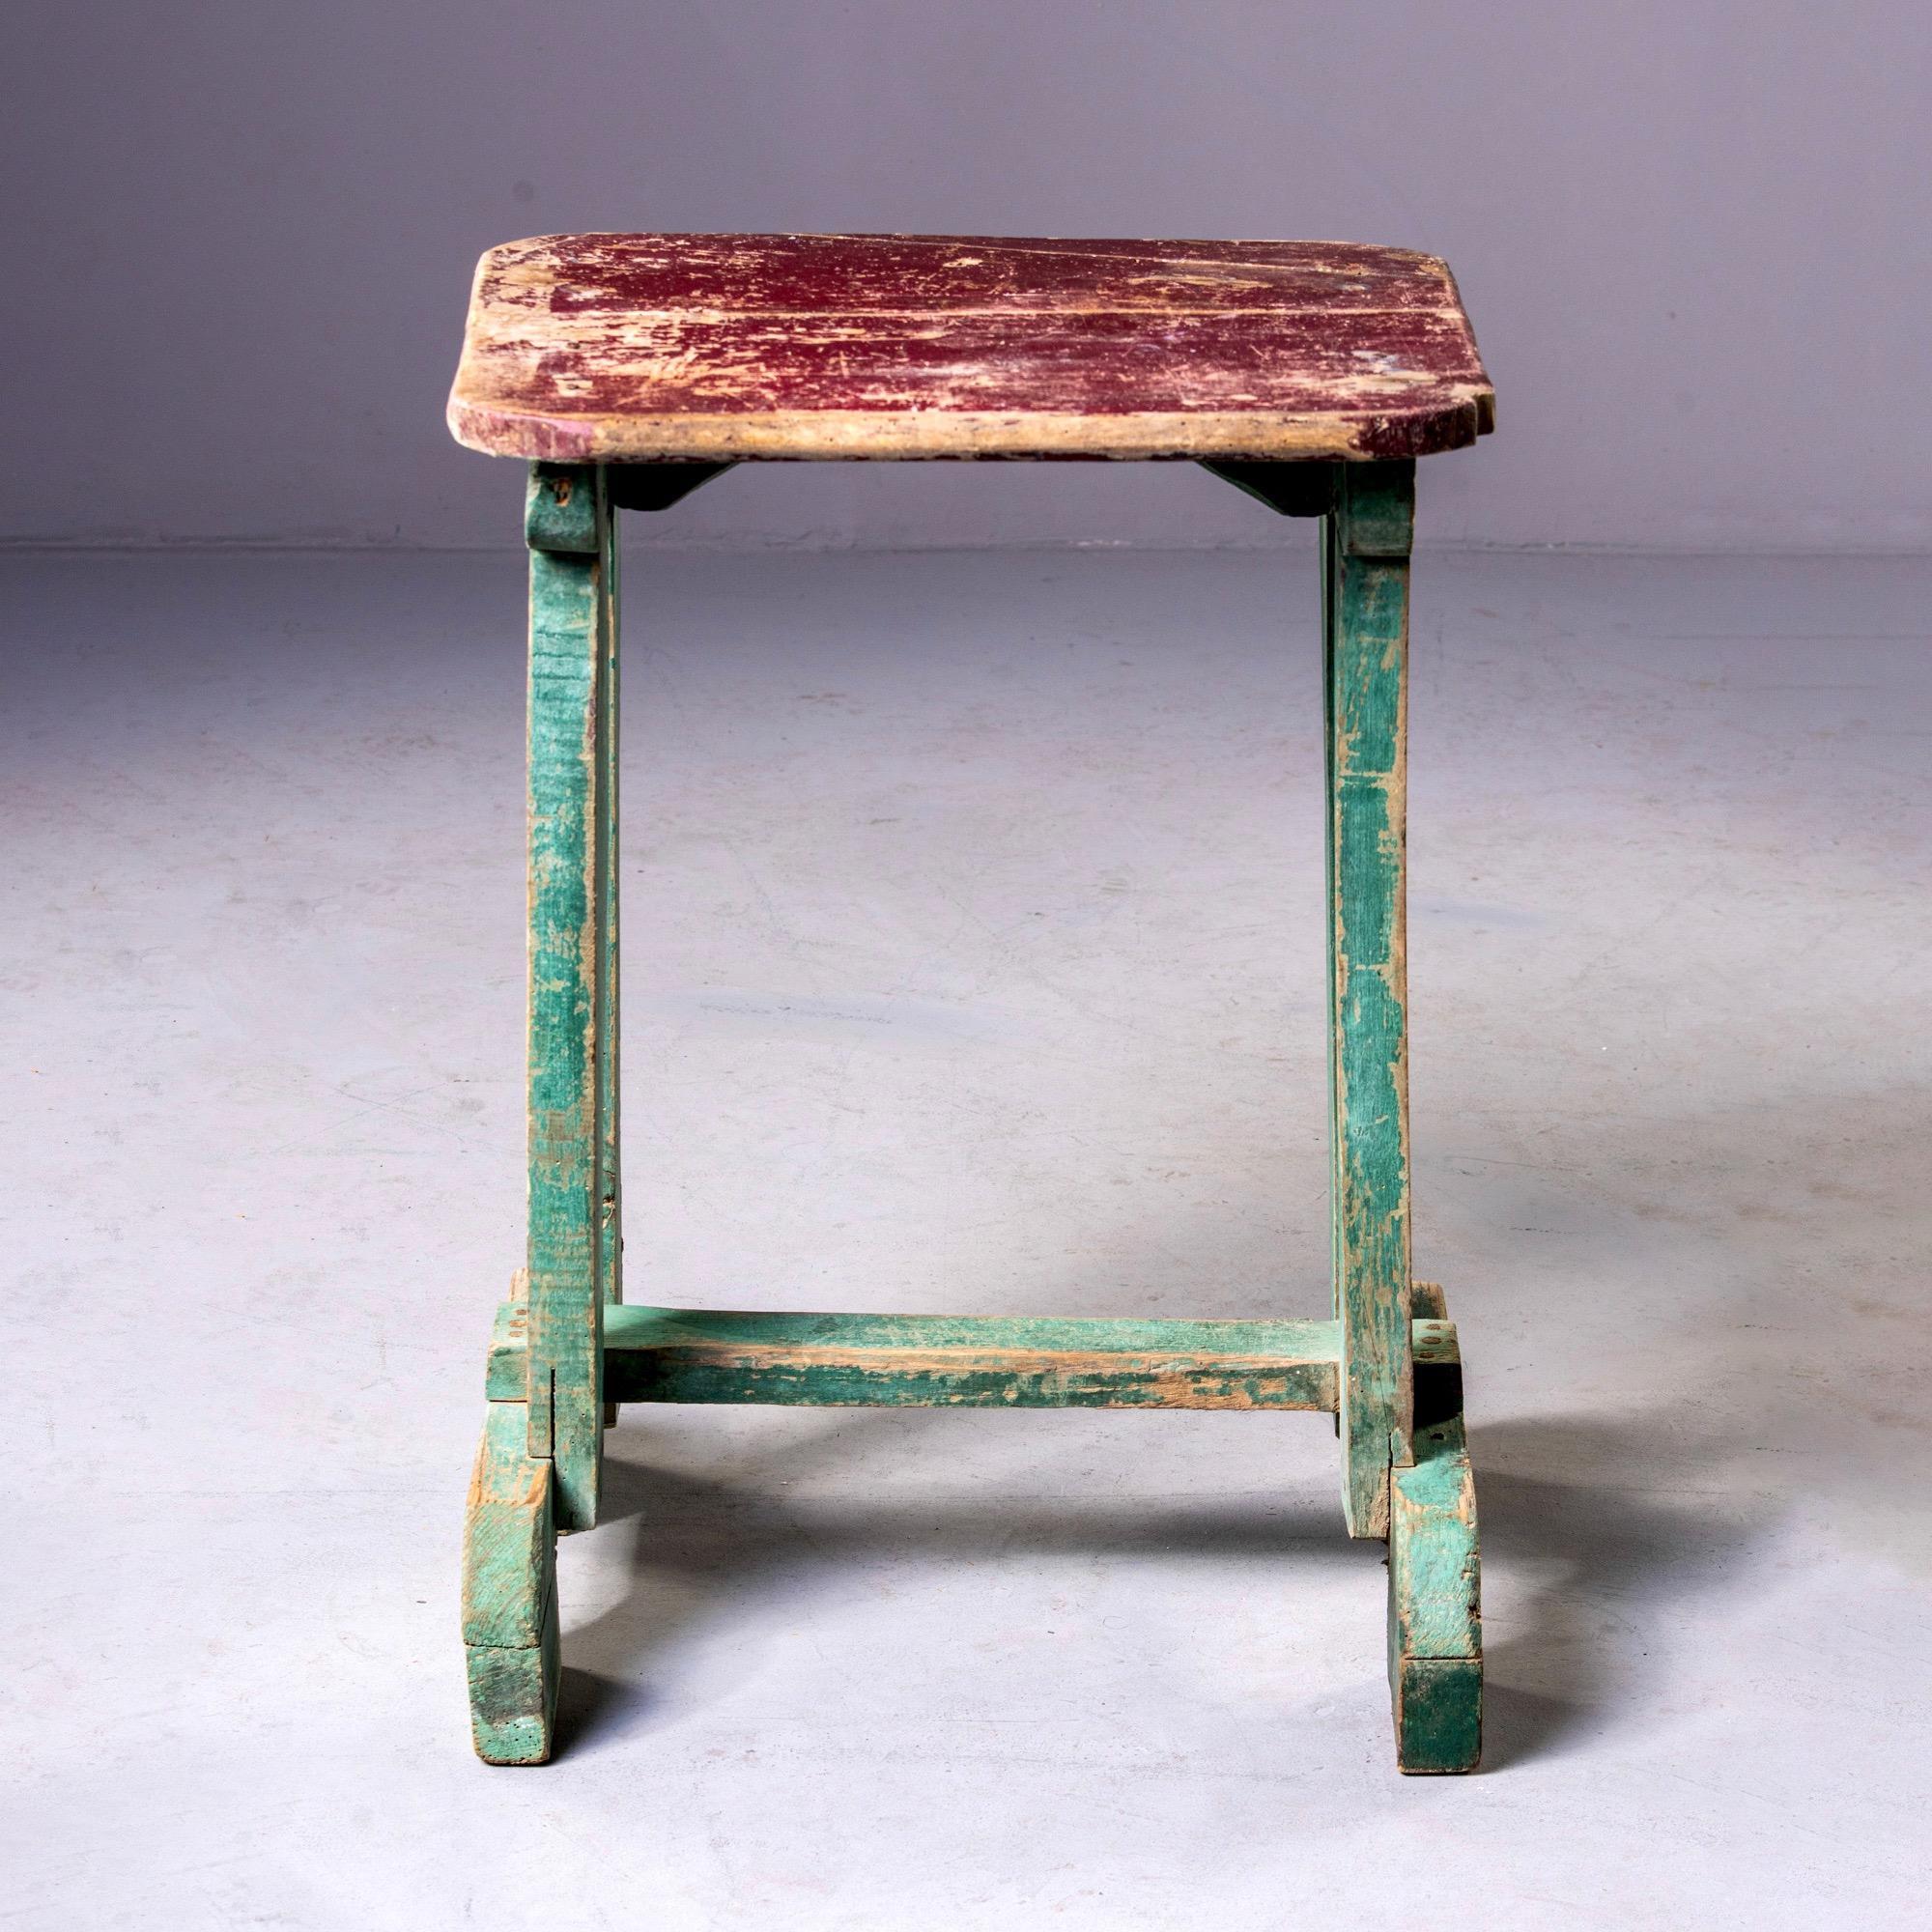 Table d'appoint en bois peint trouvée en Angleterre, vers les années 1900. Peinture rouge originale sur le dessus de la table et peinture verte sur la base. Fabricant inconnu.